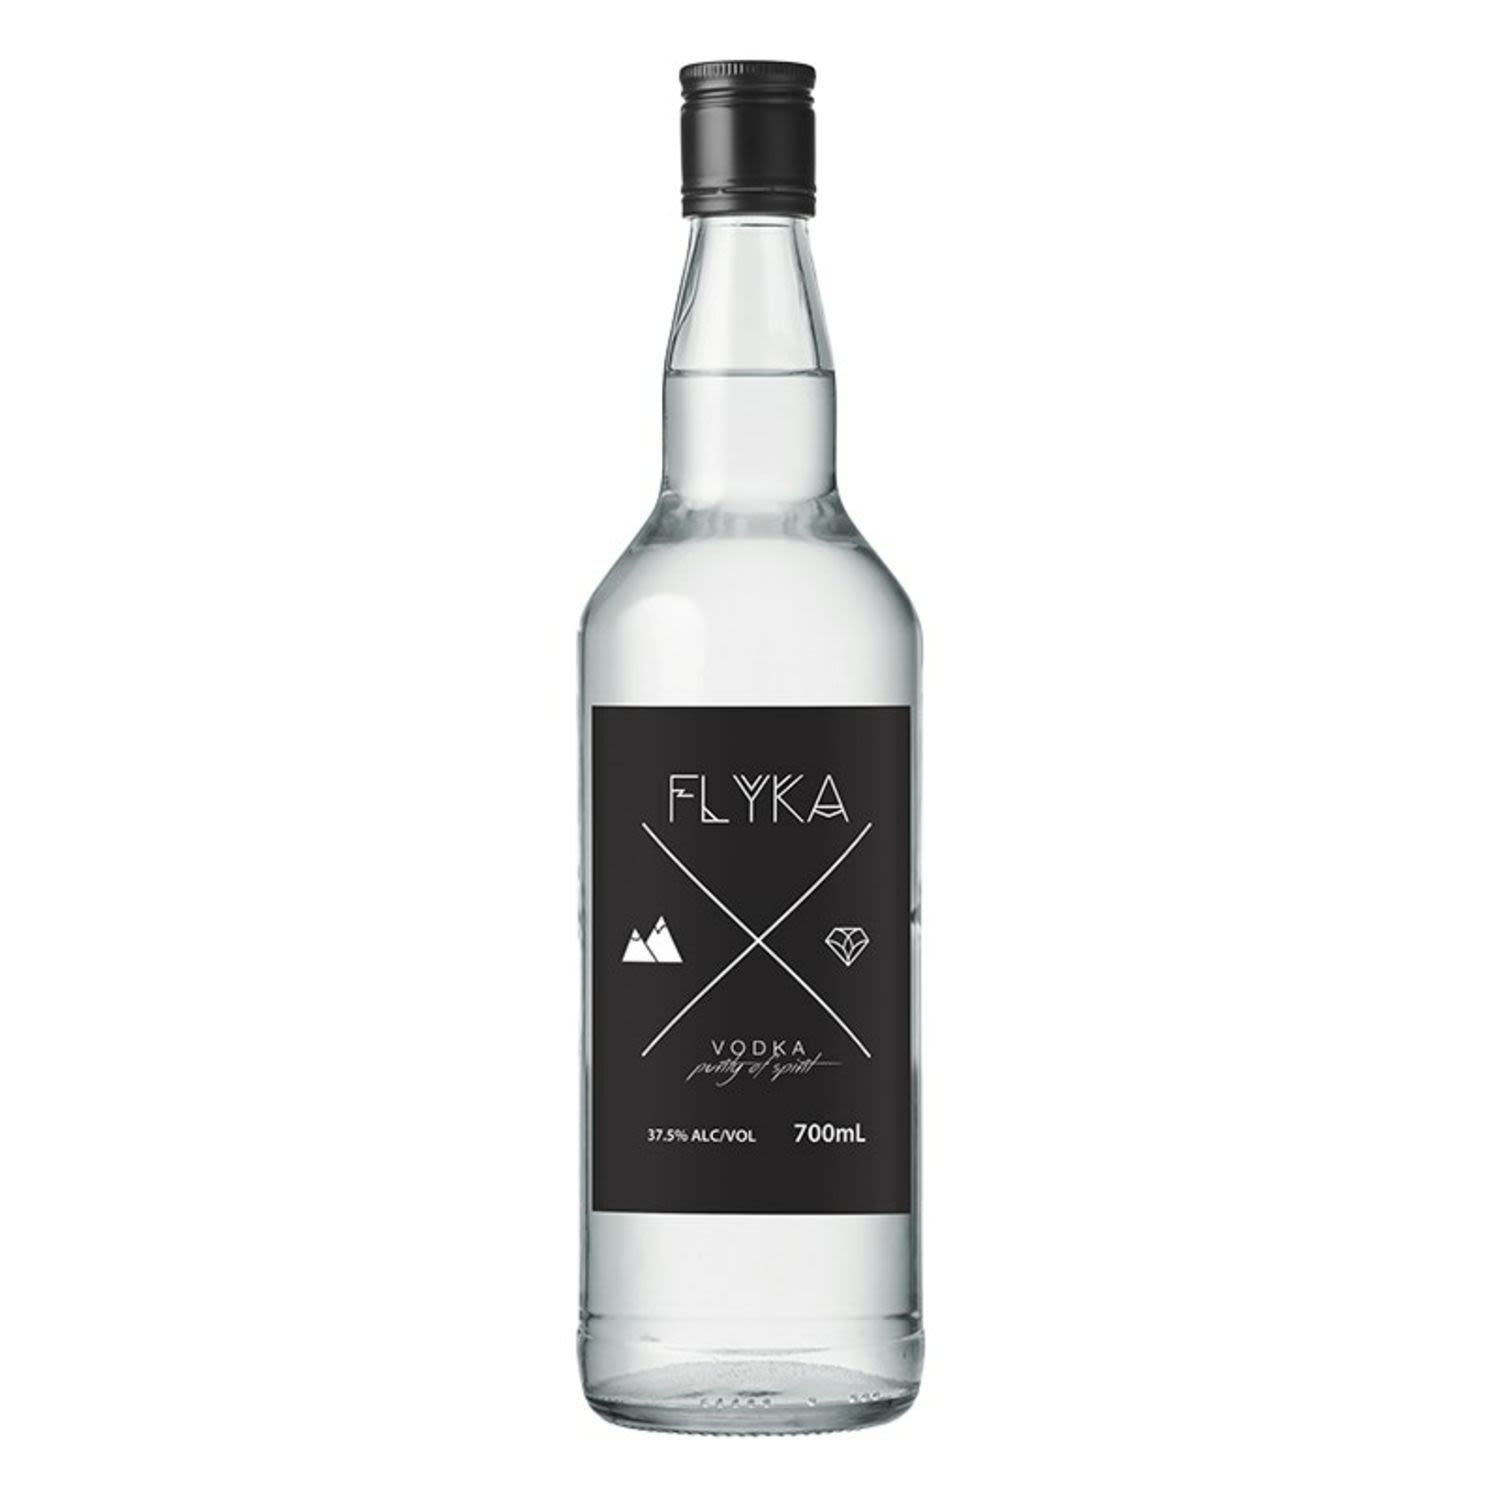 Flyka Vodka 700mL Bottle